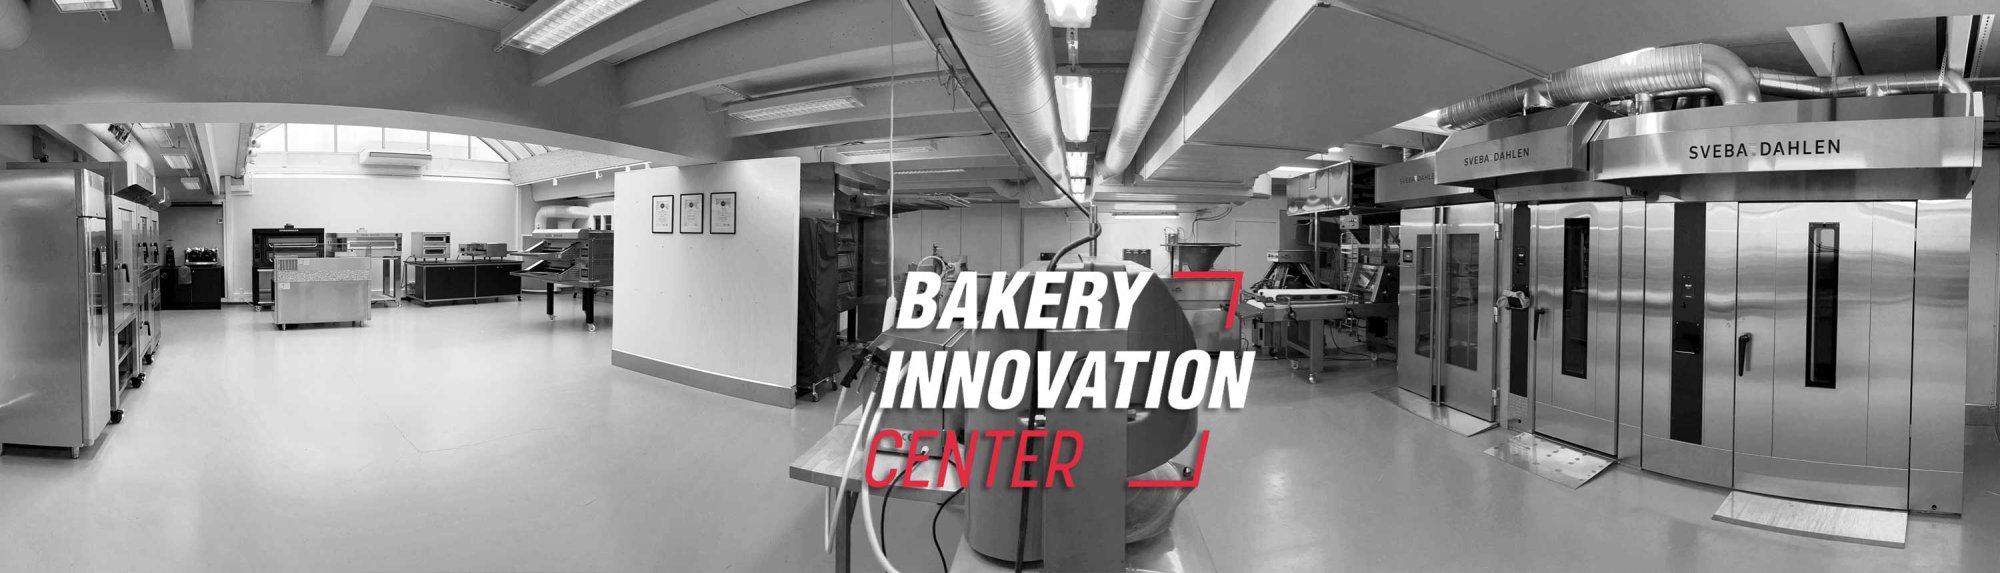 Bakery Innovation Center, training, testing, educating Sveba Dahlen Middleby